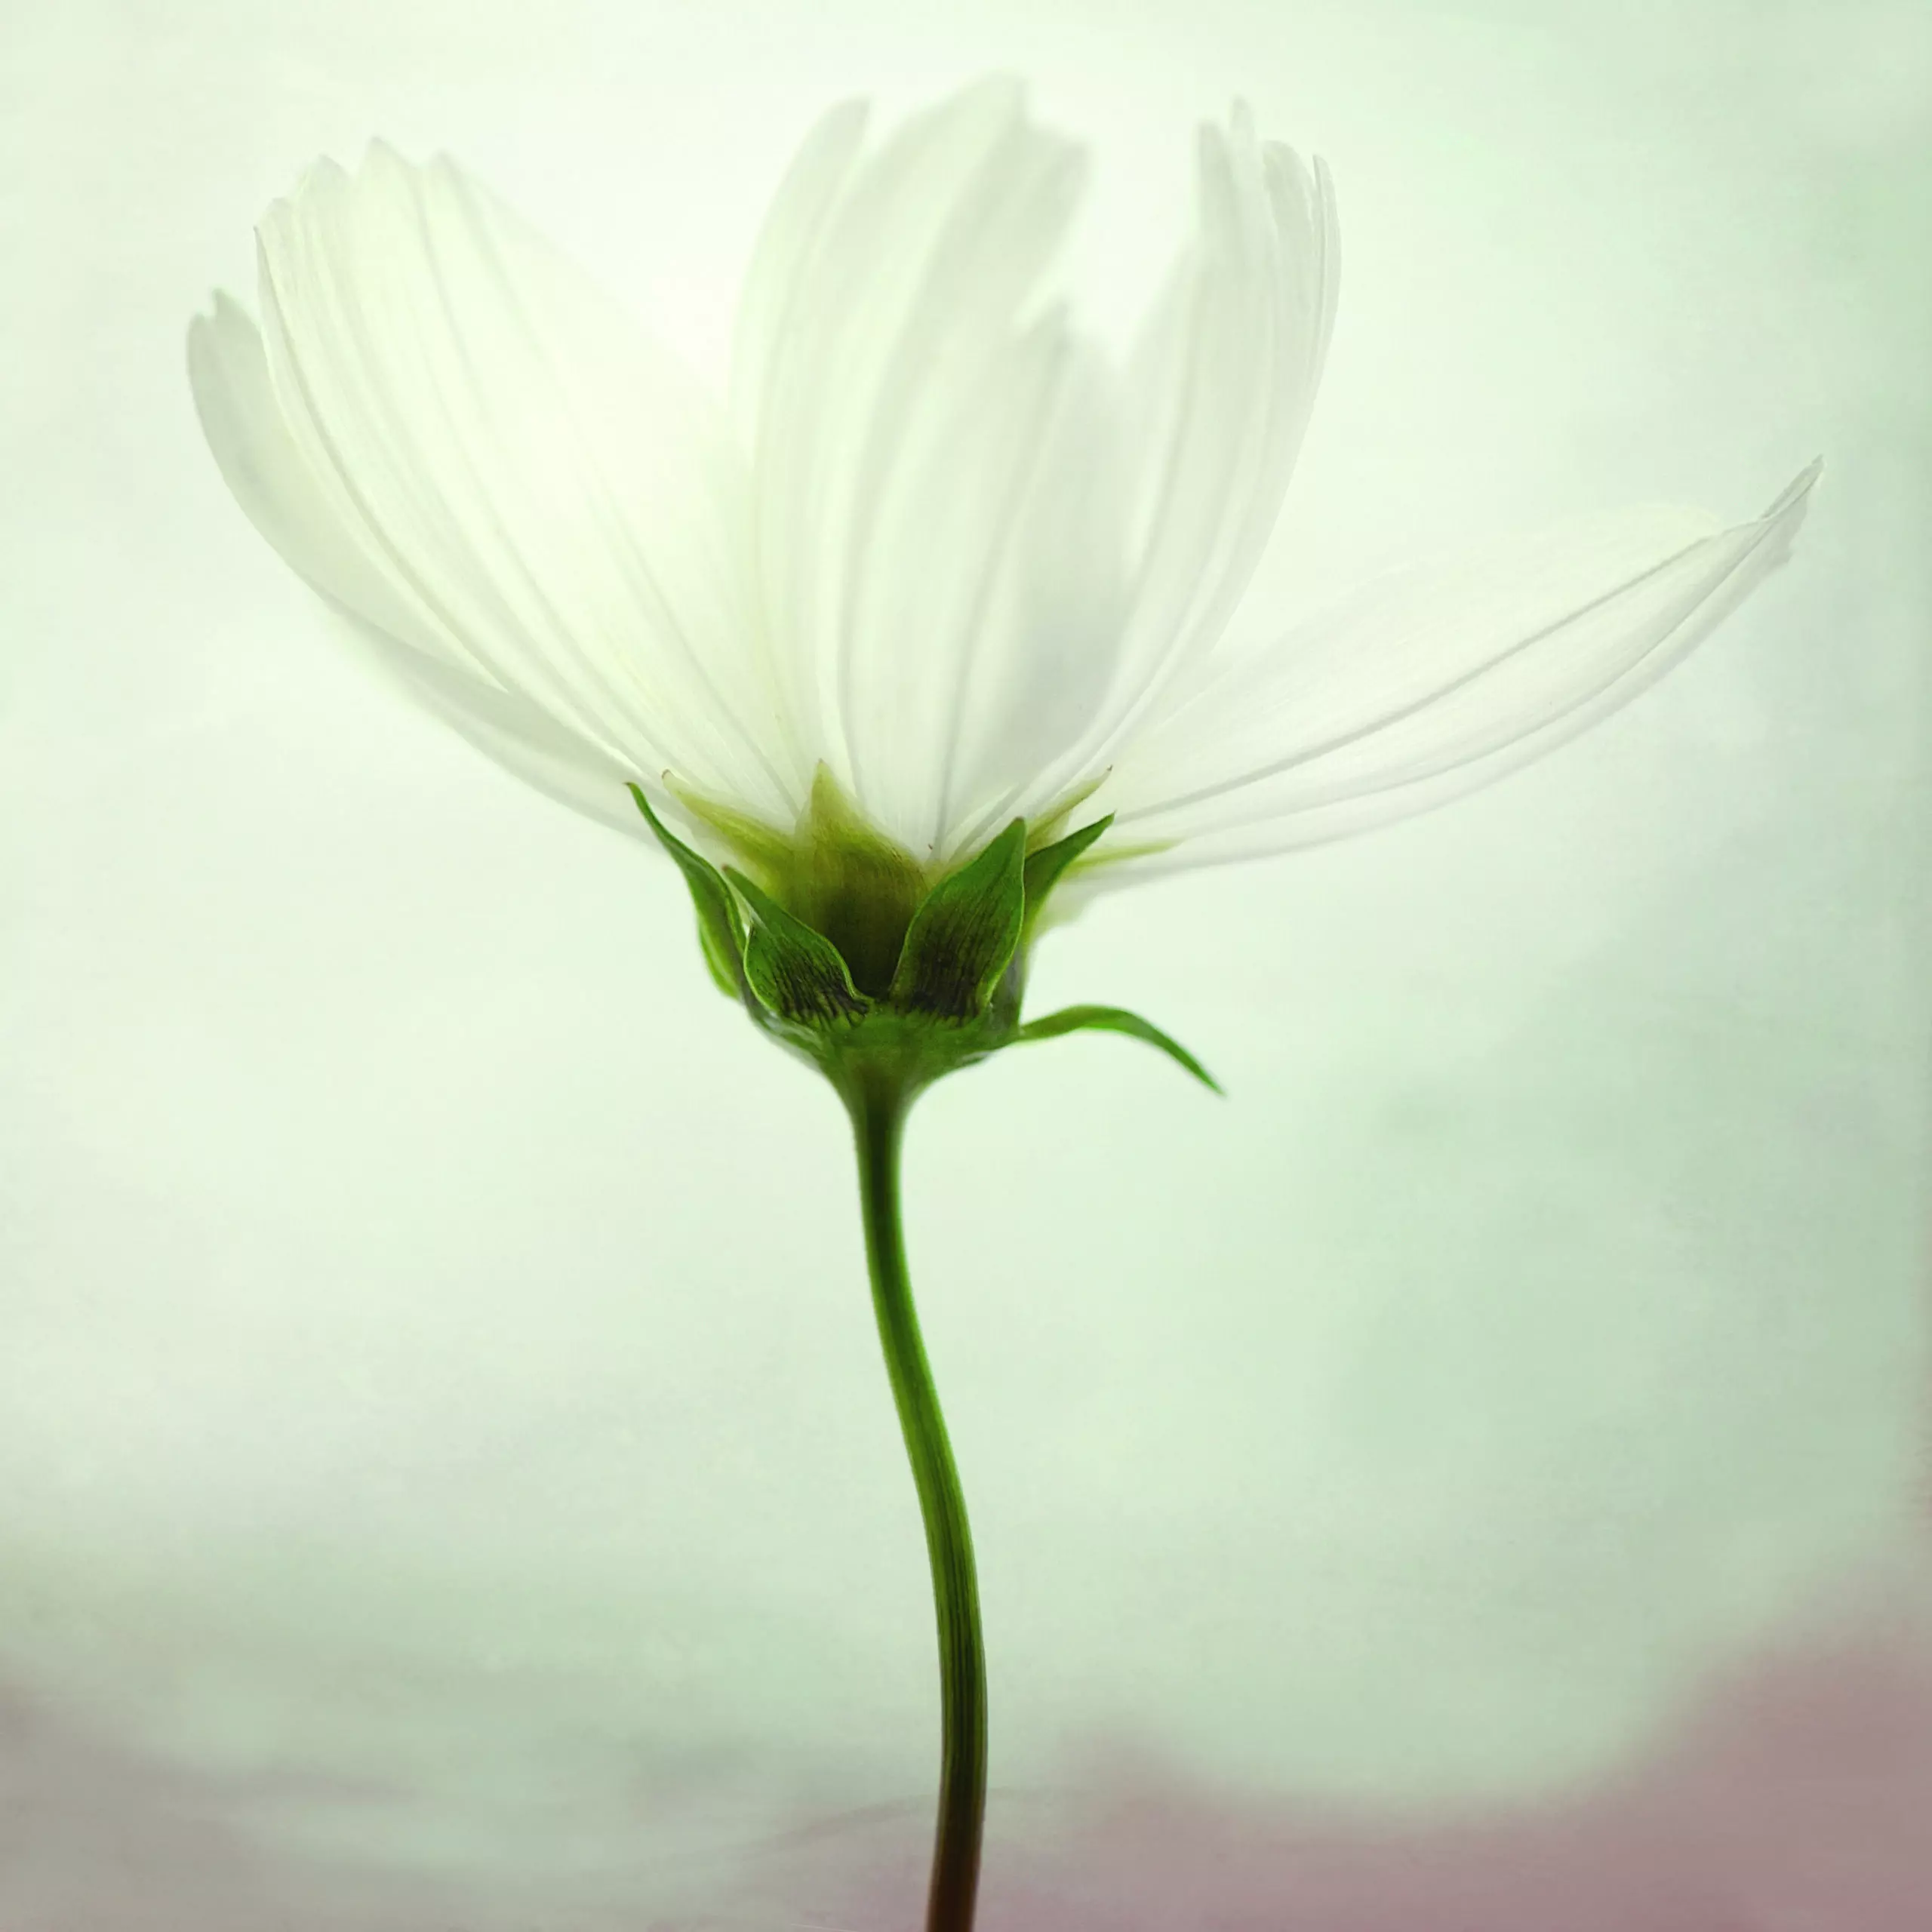 Wandbild (4766) White cosmos präsentiert: Stillleben,Details und Strukturen,Natur,Landschaften,Blumen und Blüten,Detailaufnahmen,Floral,Sonstiges Kreatives,Sonstige Naturdetails,Pflanzen